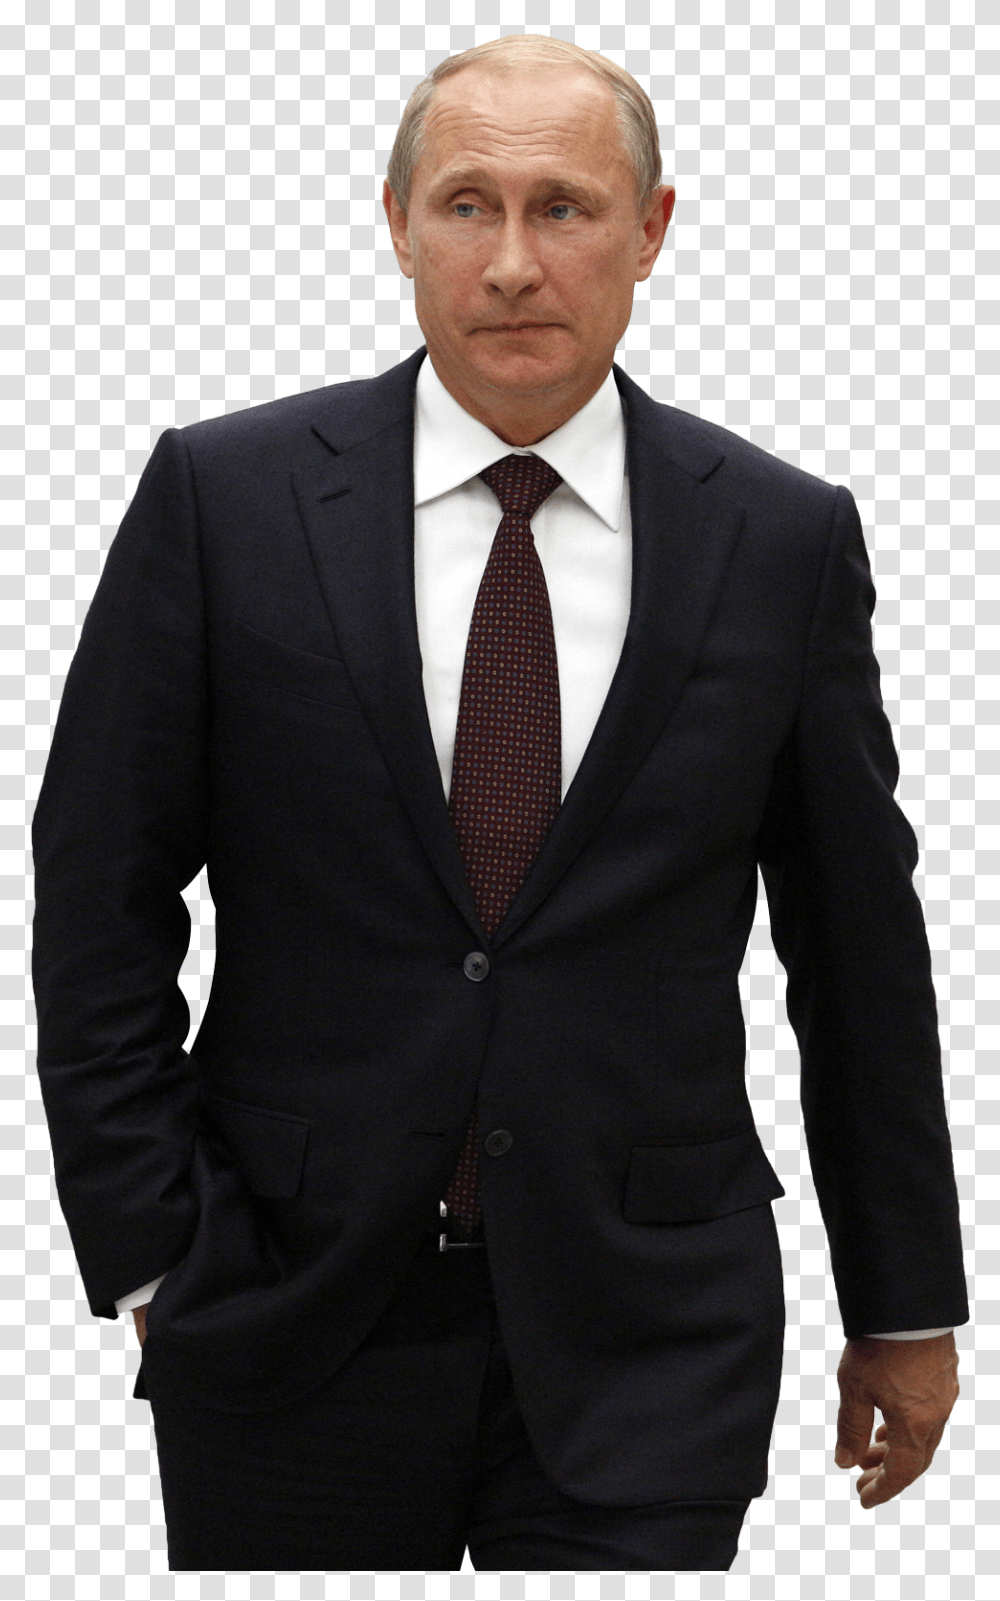 Vladimir Putin Image Putin, Tie, Accessories, Accessory Transparent Png